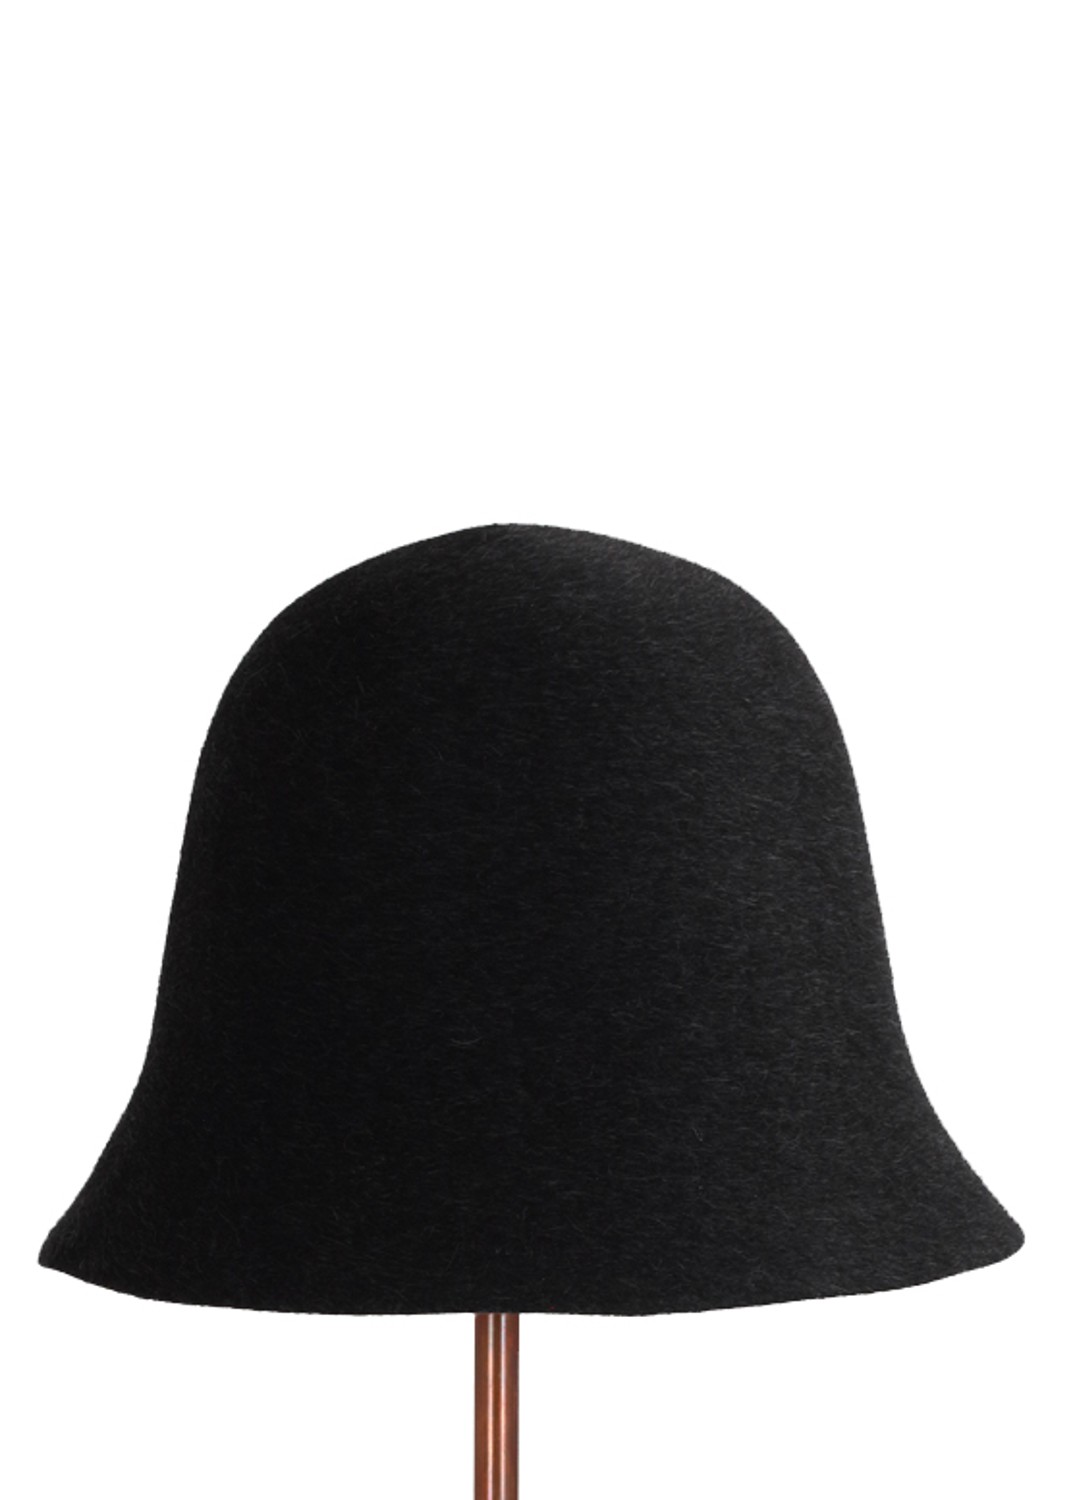 shop Flapper Sales Accessori: Cappello Flapper, modello Renata, in lana infeltrita nera. 

Composizione: 100% lana. number 1542